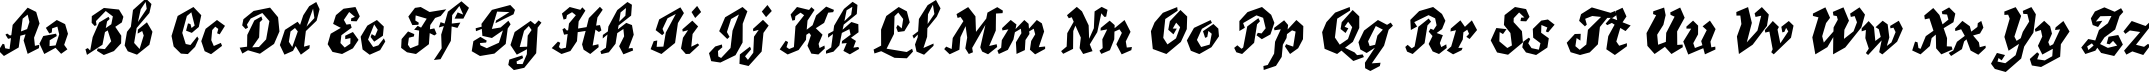 Пример написания английского алфавита шрифтом TrueGritITC